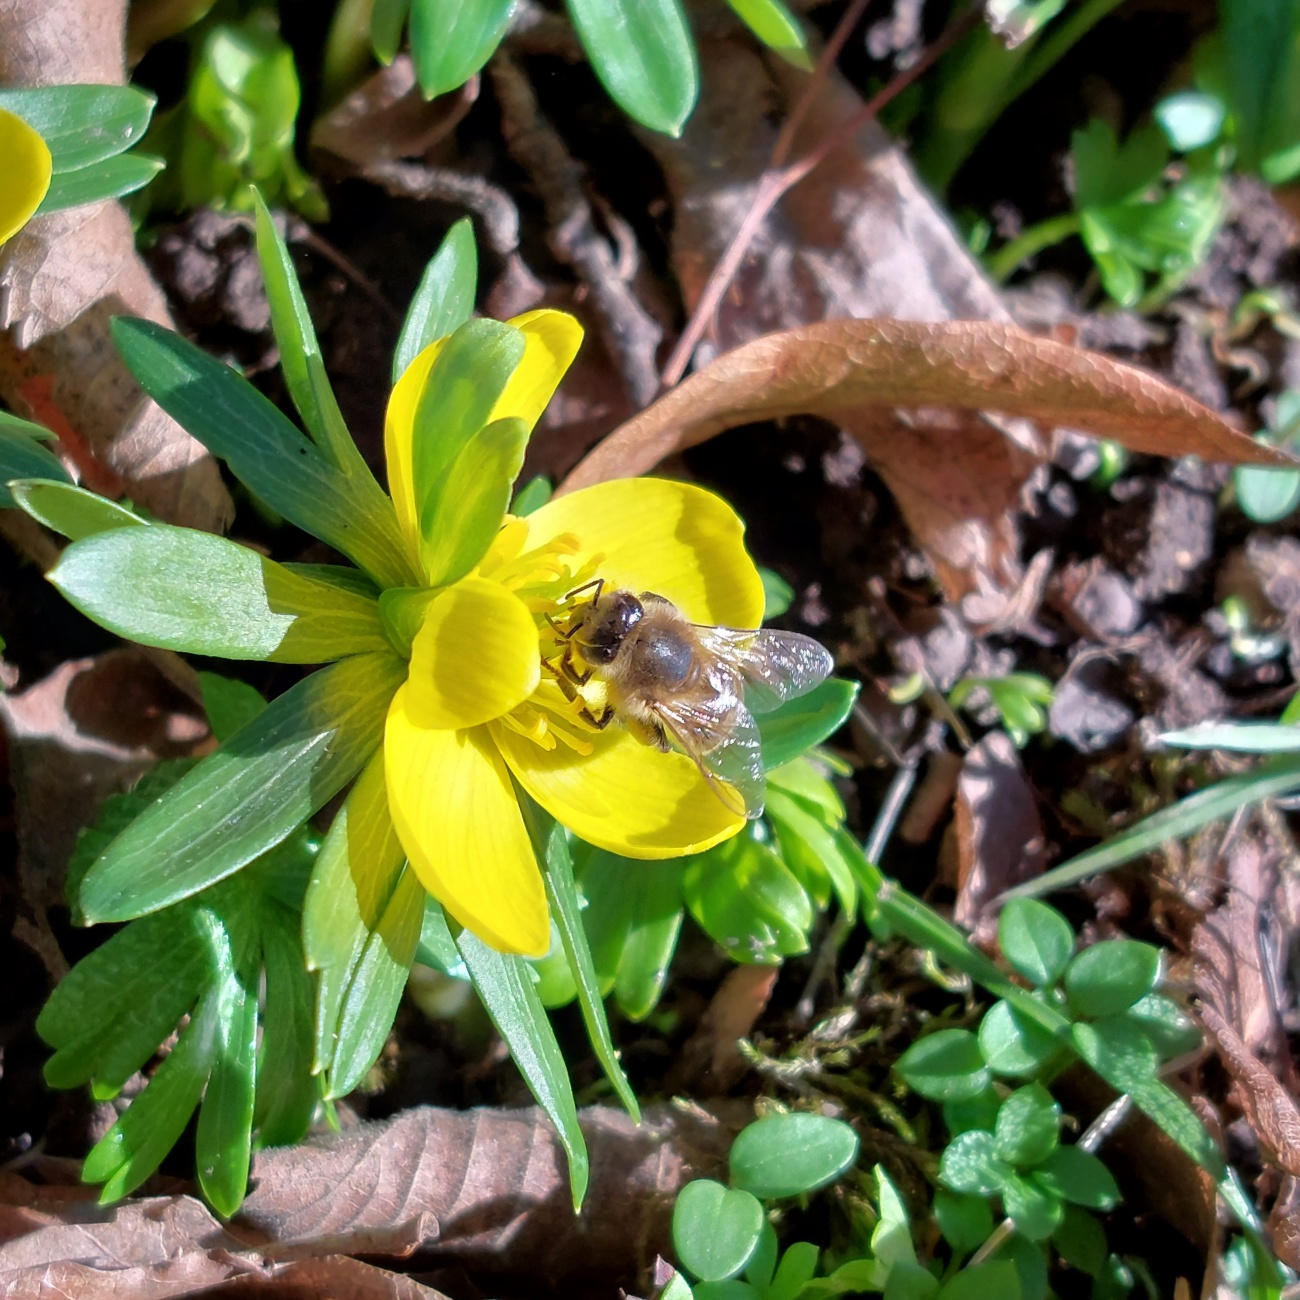 Foto: Martin Zehrer - Erste Bienen im Februar in Bad Berka.<br />
<br />
+14 Grad und nur Sonne... ein tolles Frühlingswetter! 